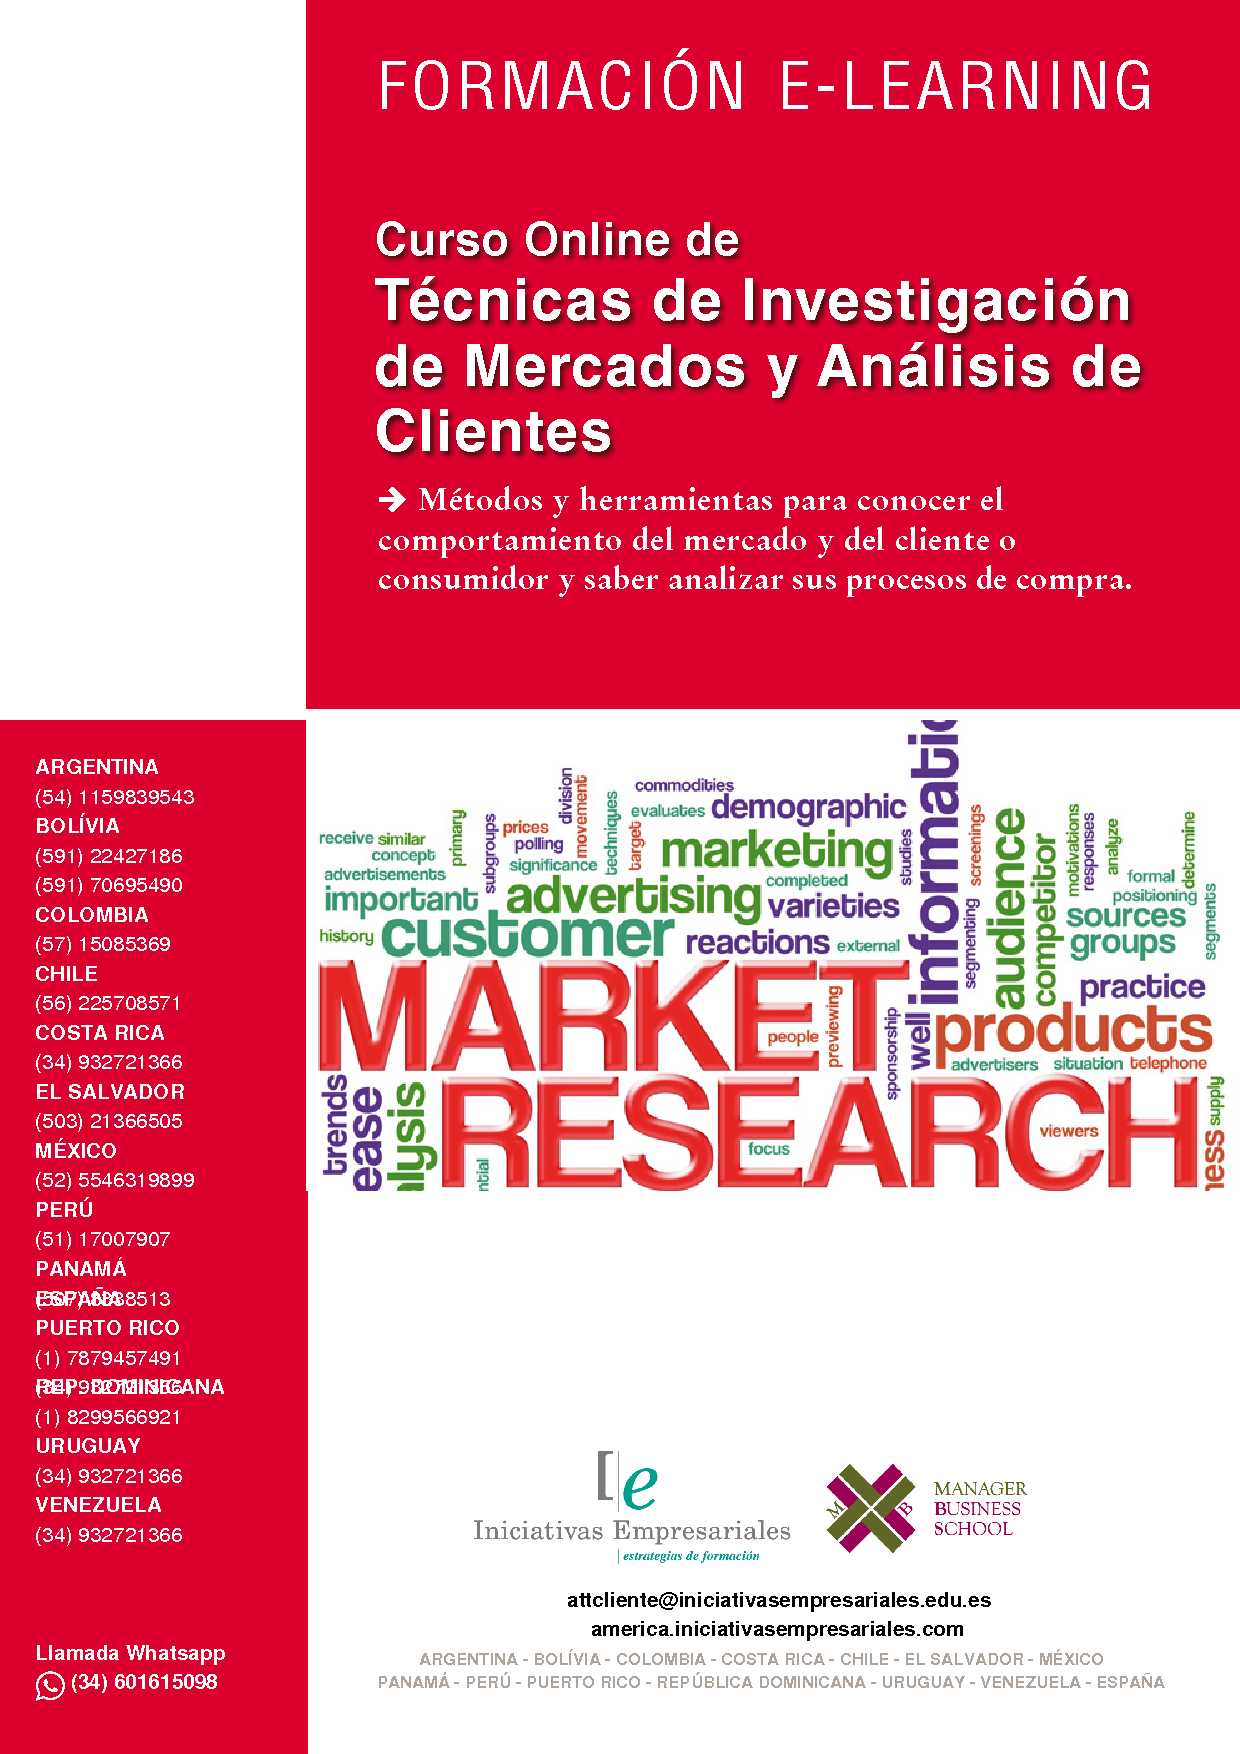 Técnicas de Investigación de Mercados y Análisis de Clientes